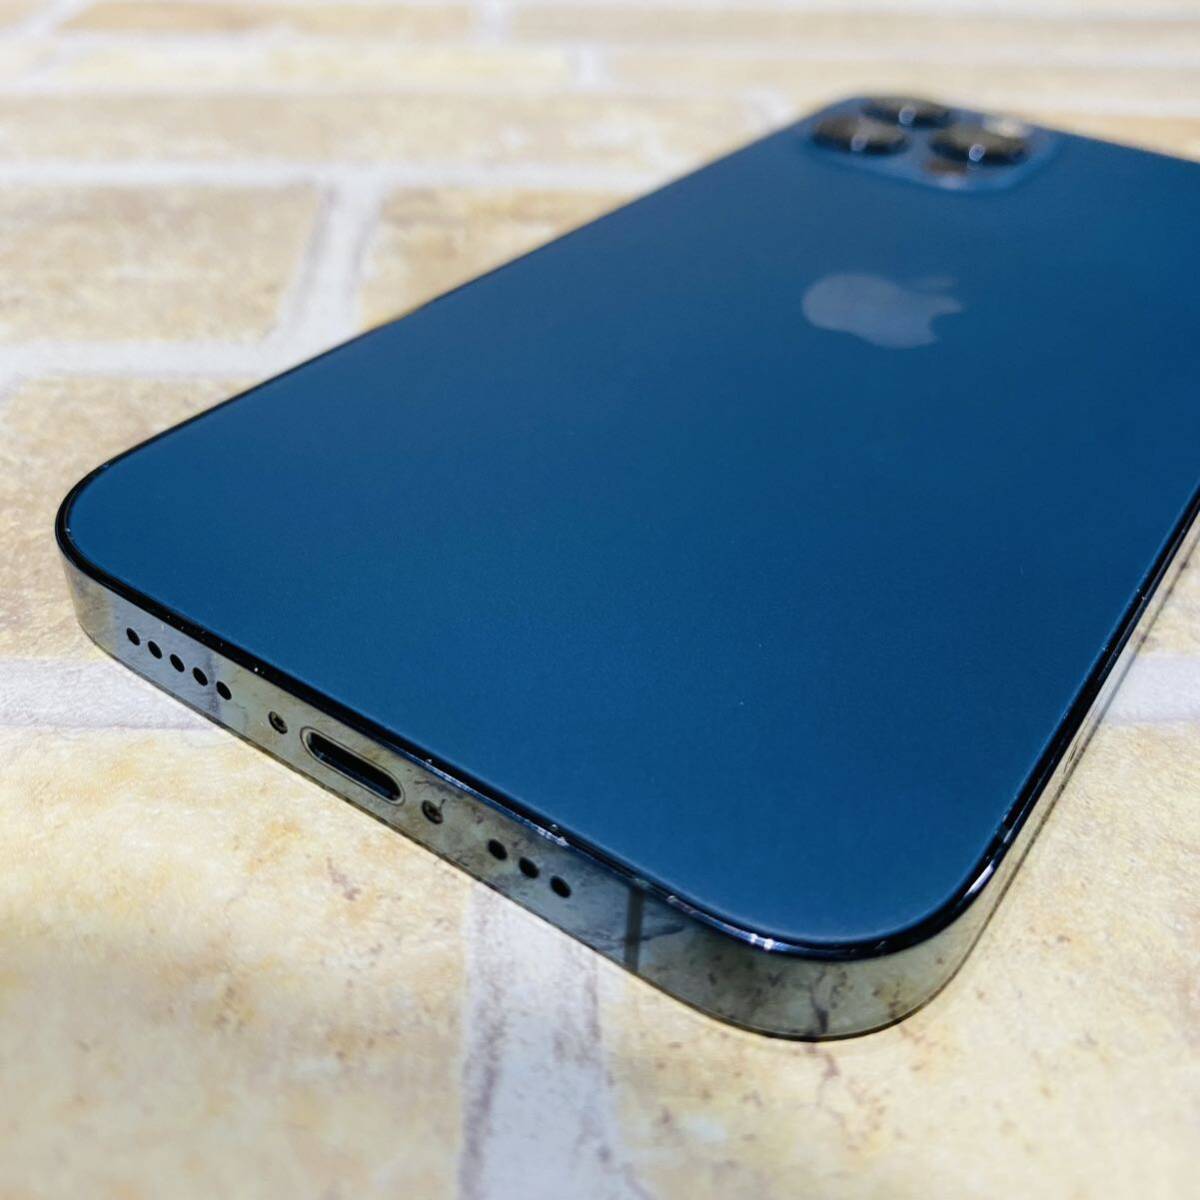 SIMフリー iPhone12Pro 256GB 966 パシフィックブルー 電池新品